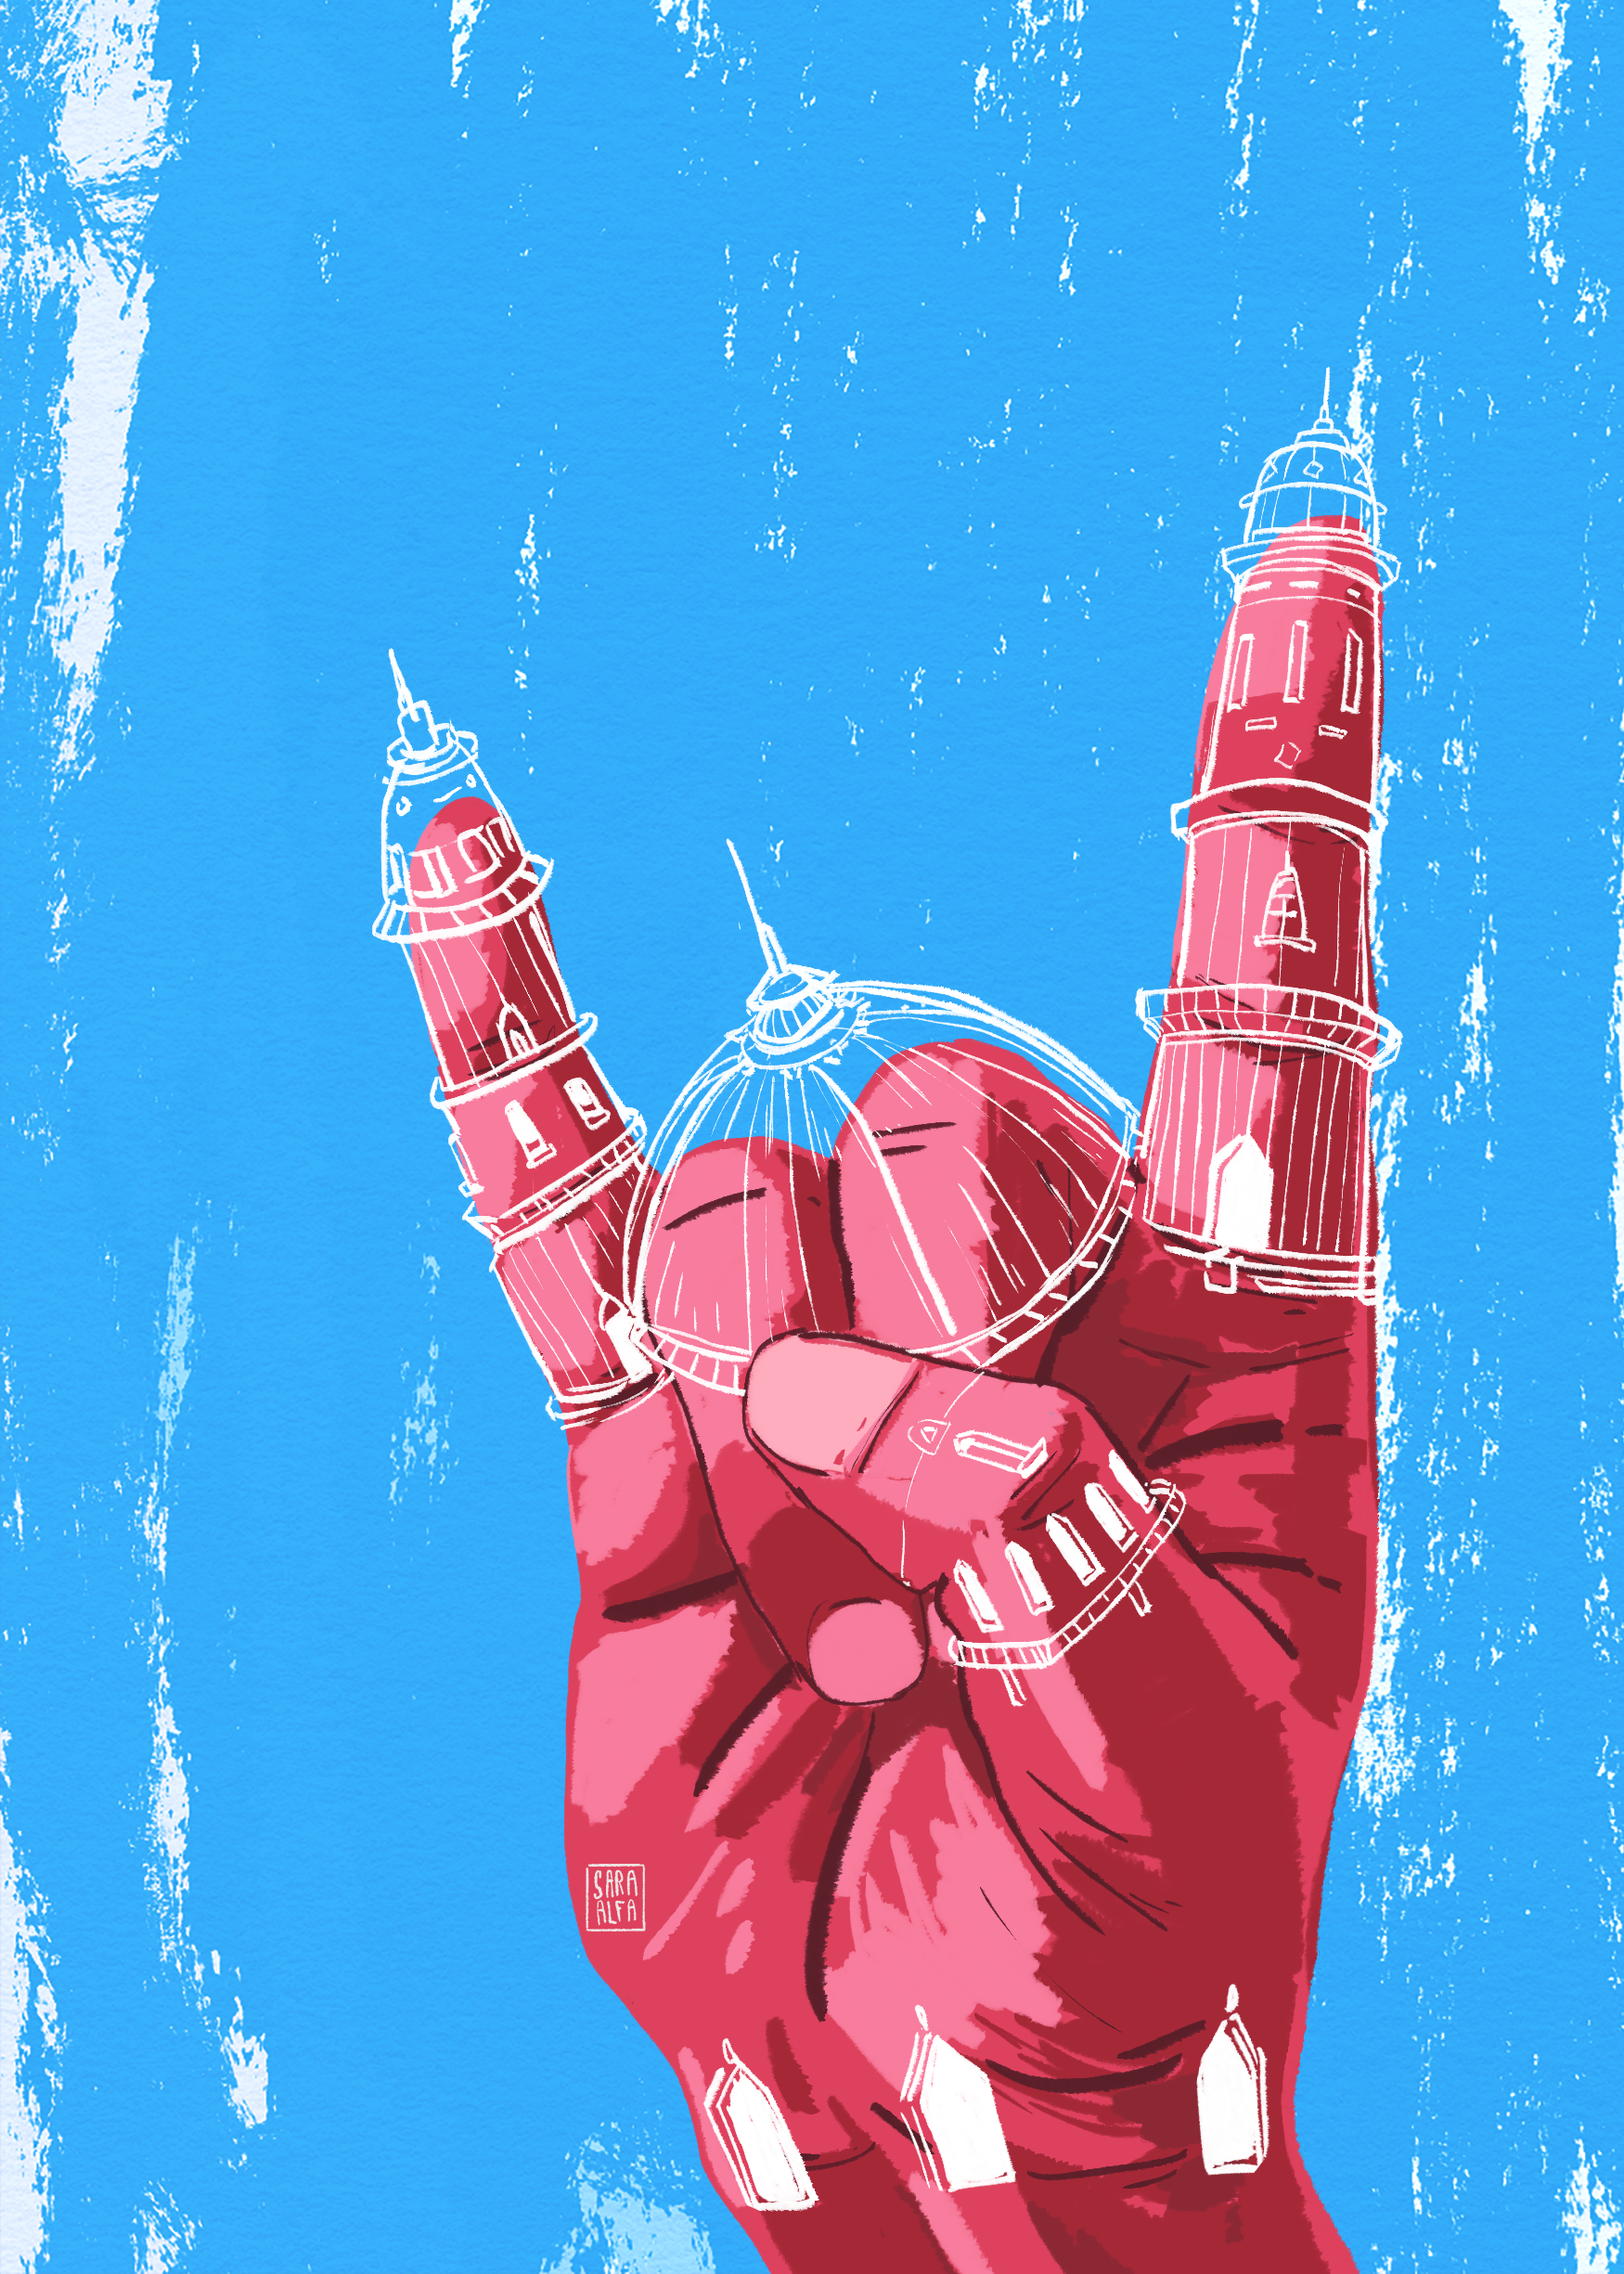 Uma ilustração mostrando elementos arquitetônicos popularmente associados a mesquitas, como minaretes e cúpulas, justapostos ao símbolo “Rock On”.